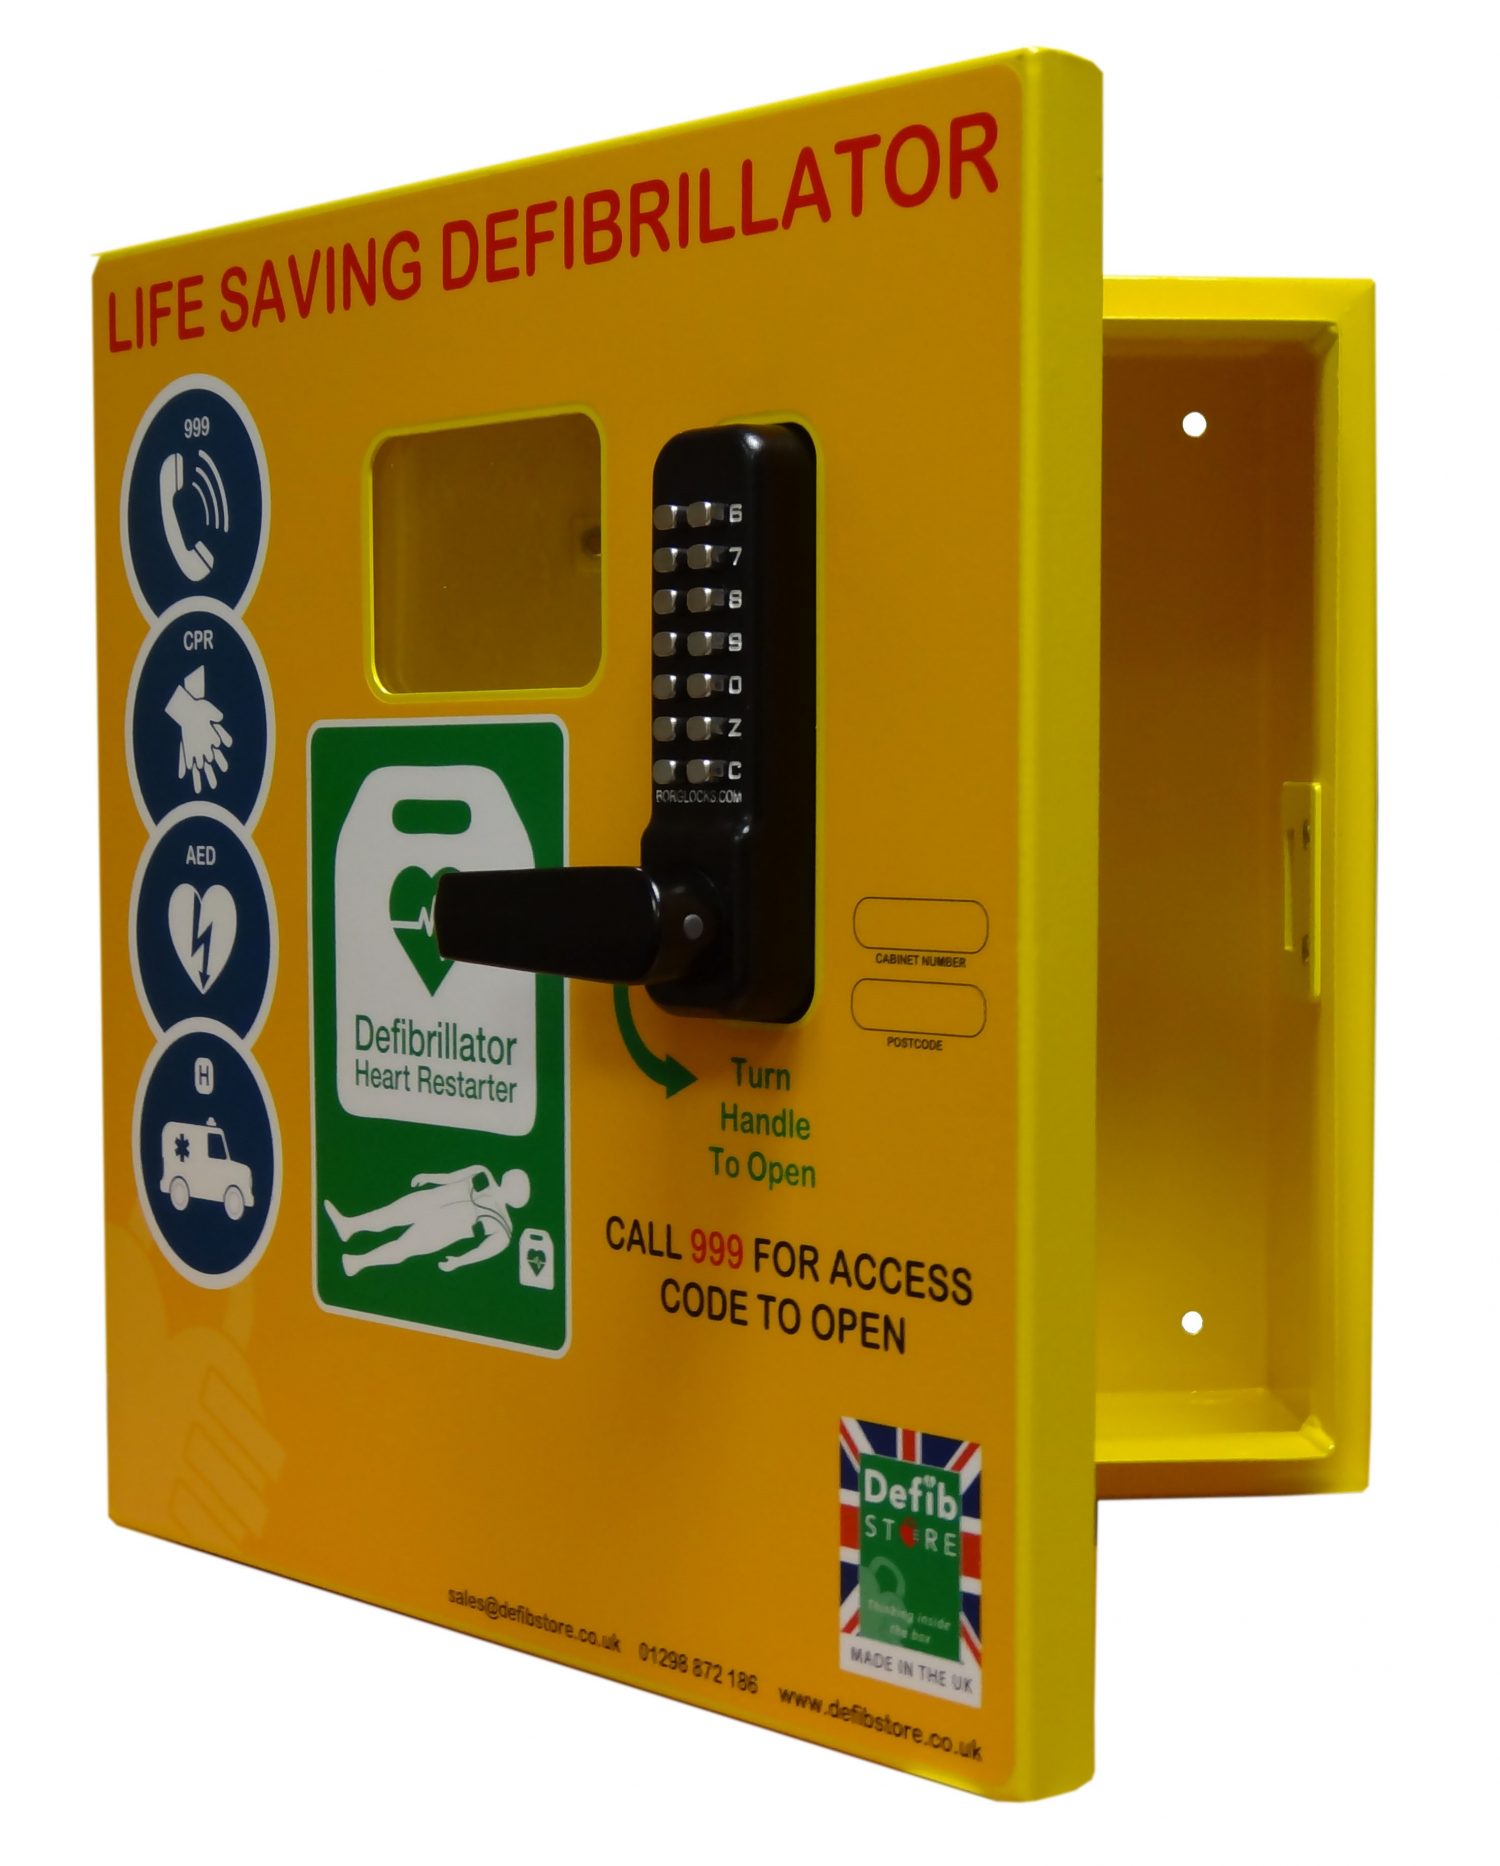 defibrillator-cabinet-northern-ireland